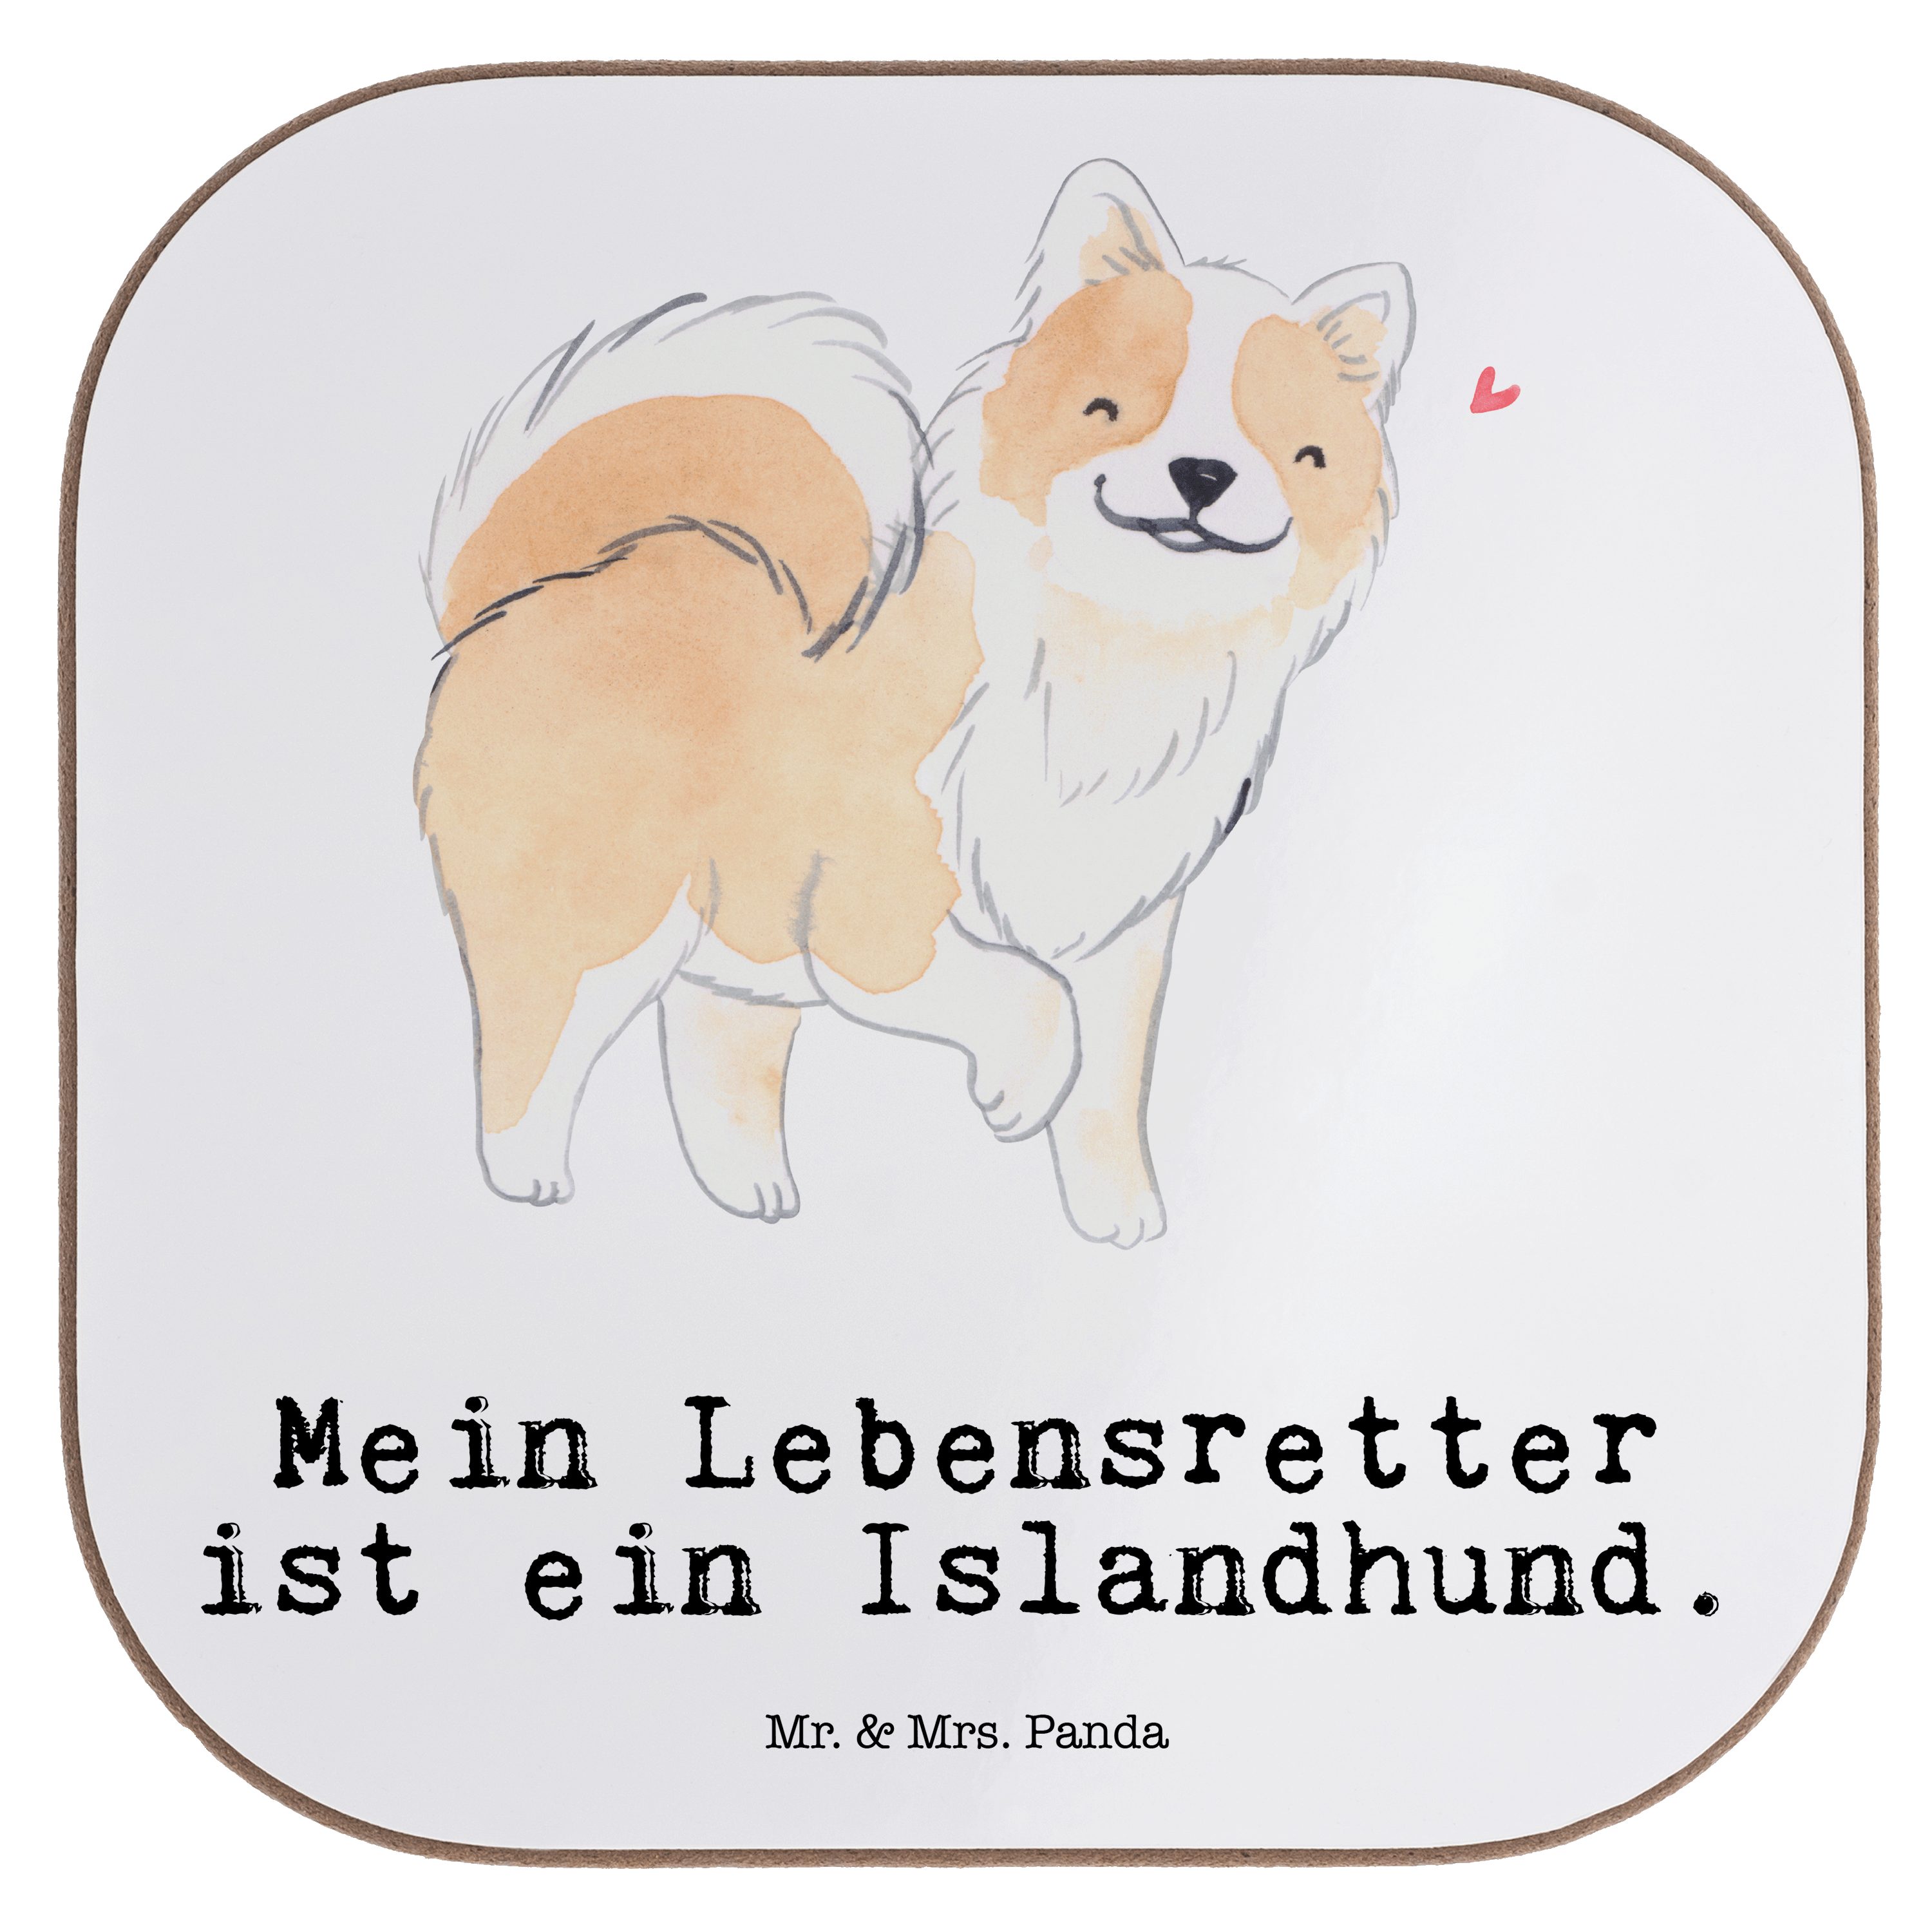 Mr. & Mrs. Panda Getränkeuntersetzer Islandhund Lebensretter - Weiß - Geschenk, Getränkeuntersetzer, Tierf, 1-tlg.